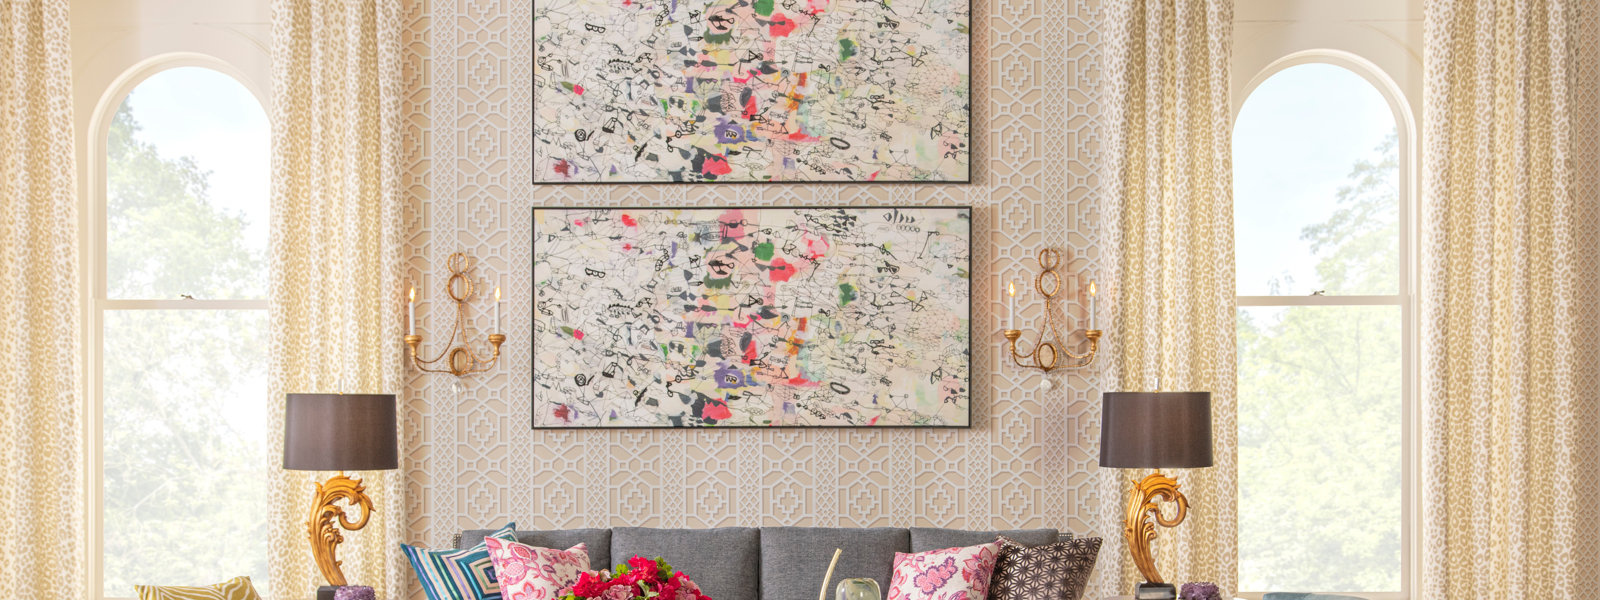 schumacher-wallpaper-bedroom-botanical-prints-framed - The Glam Pad